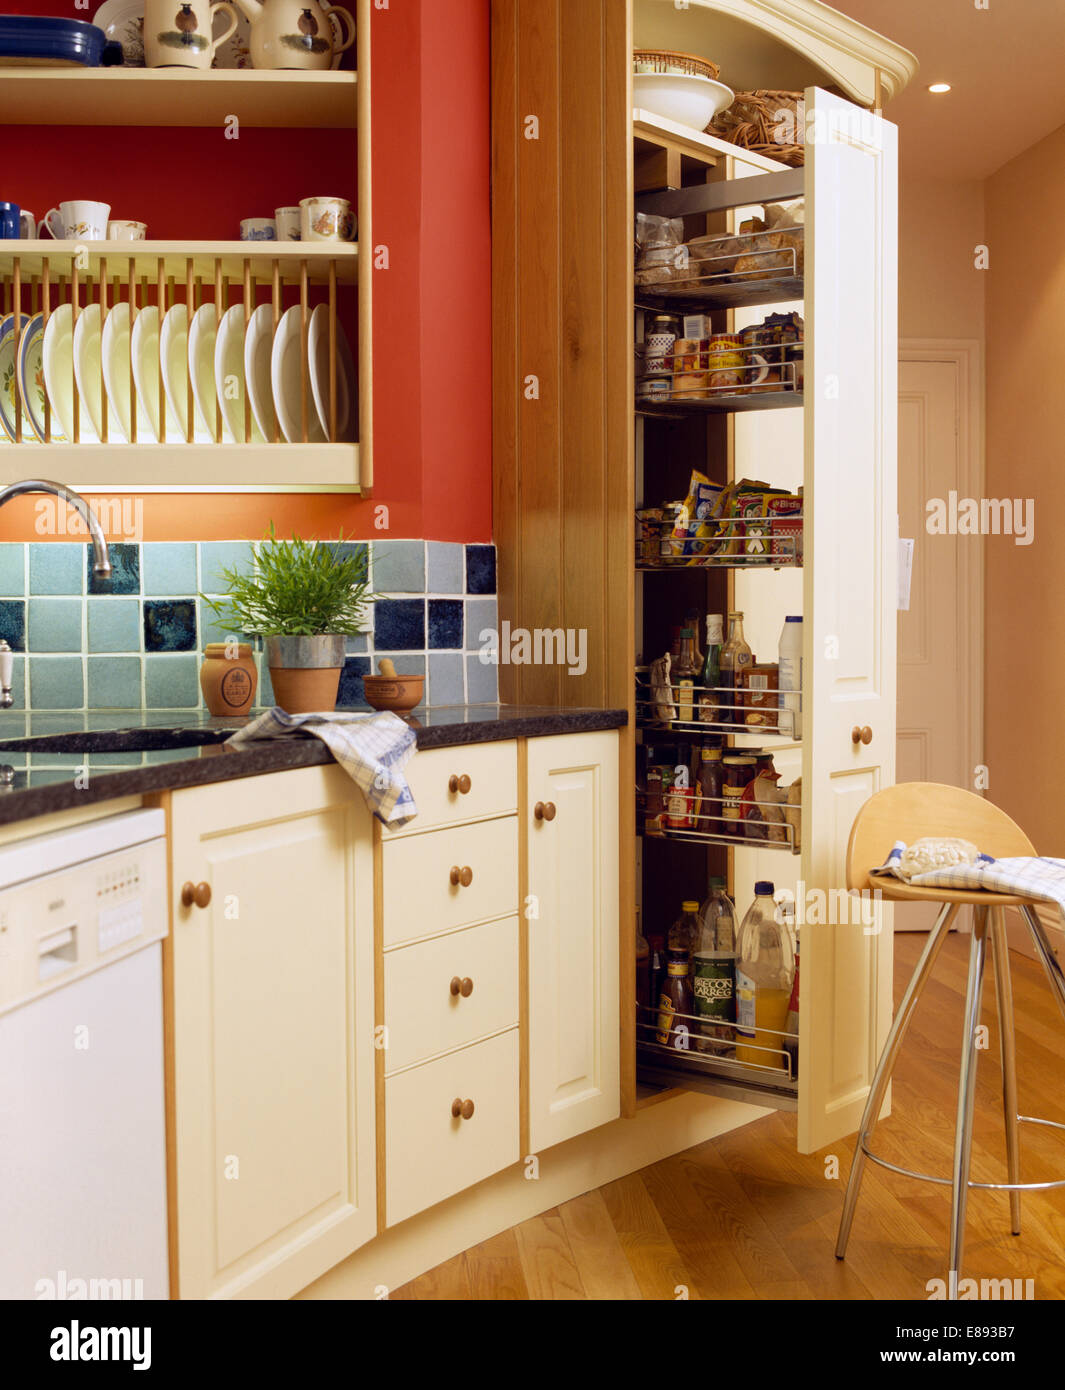 Herausziehen der Schubladen im Vorratsschrank Schrank in der Küche mit blau  gekachelten Spritzschutz unter Tellerhalter Stockfotografie - Alamy